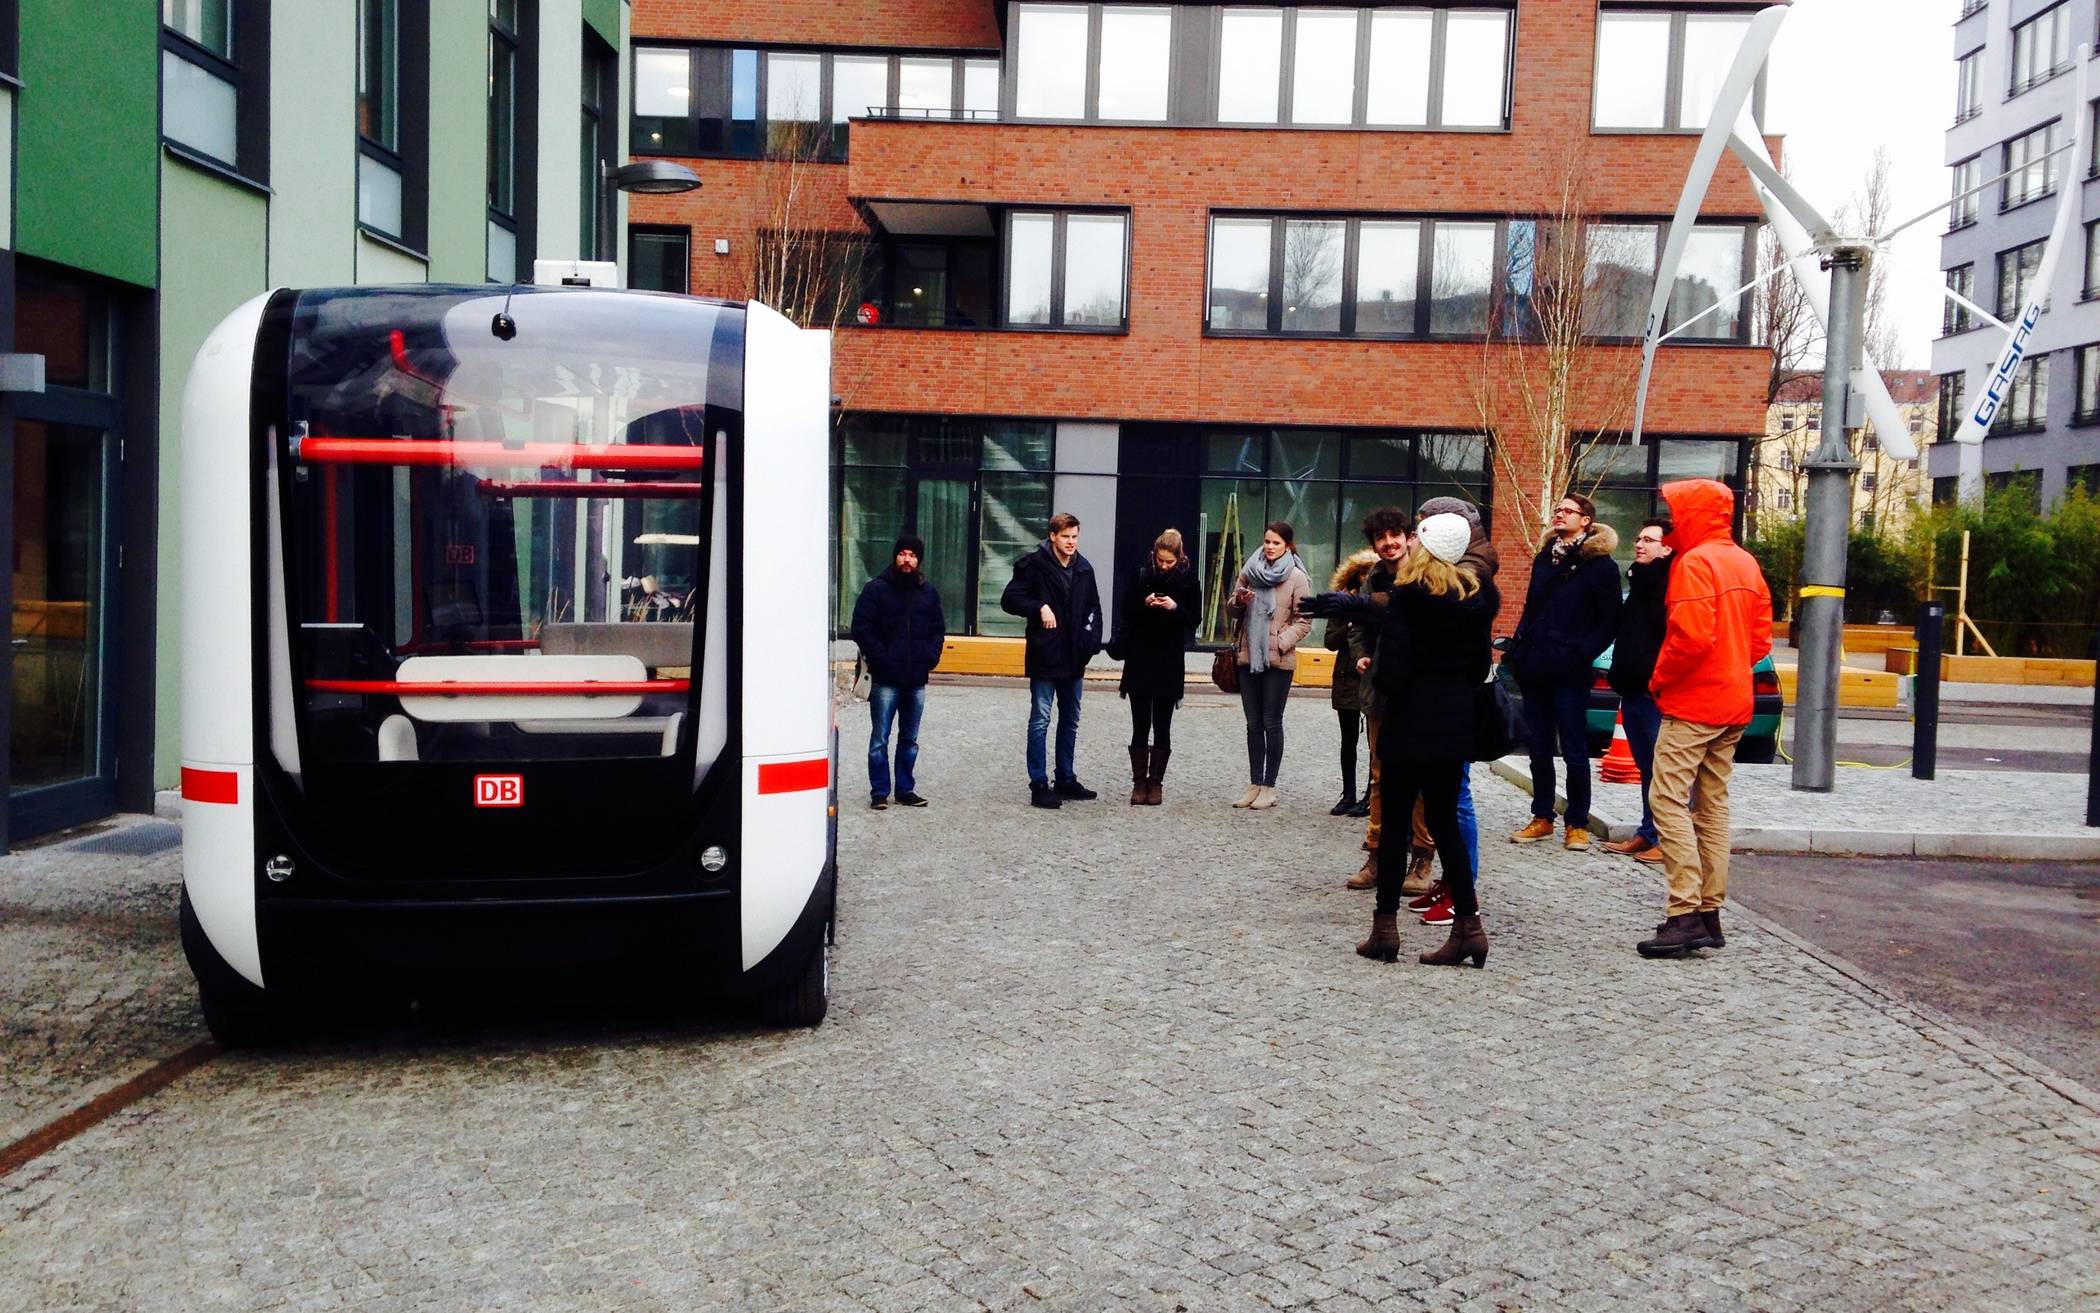  Zum Besuch gehört auch eine Besuch des EUREF Campus, auf dem bereits ein autonom fahrende Kleinbusse im Testbetrieb fahren. 